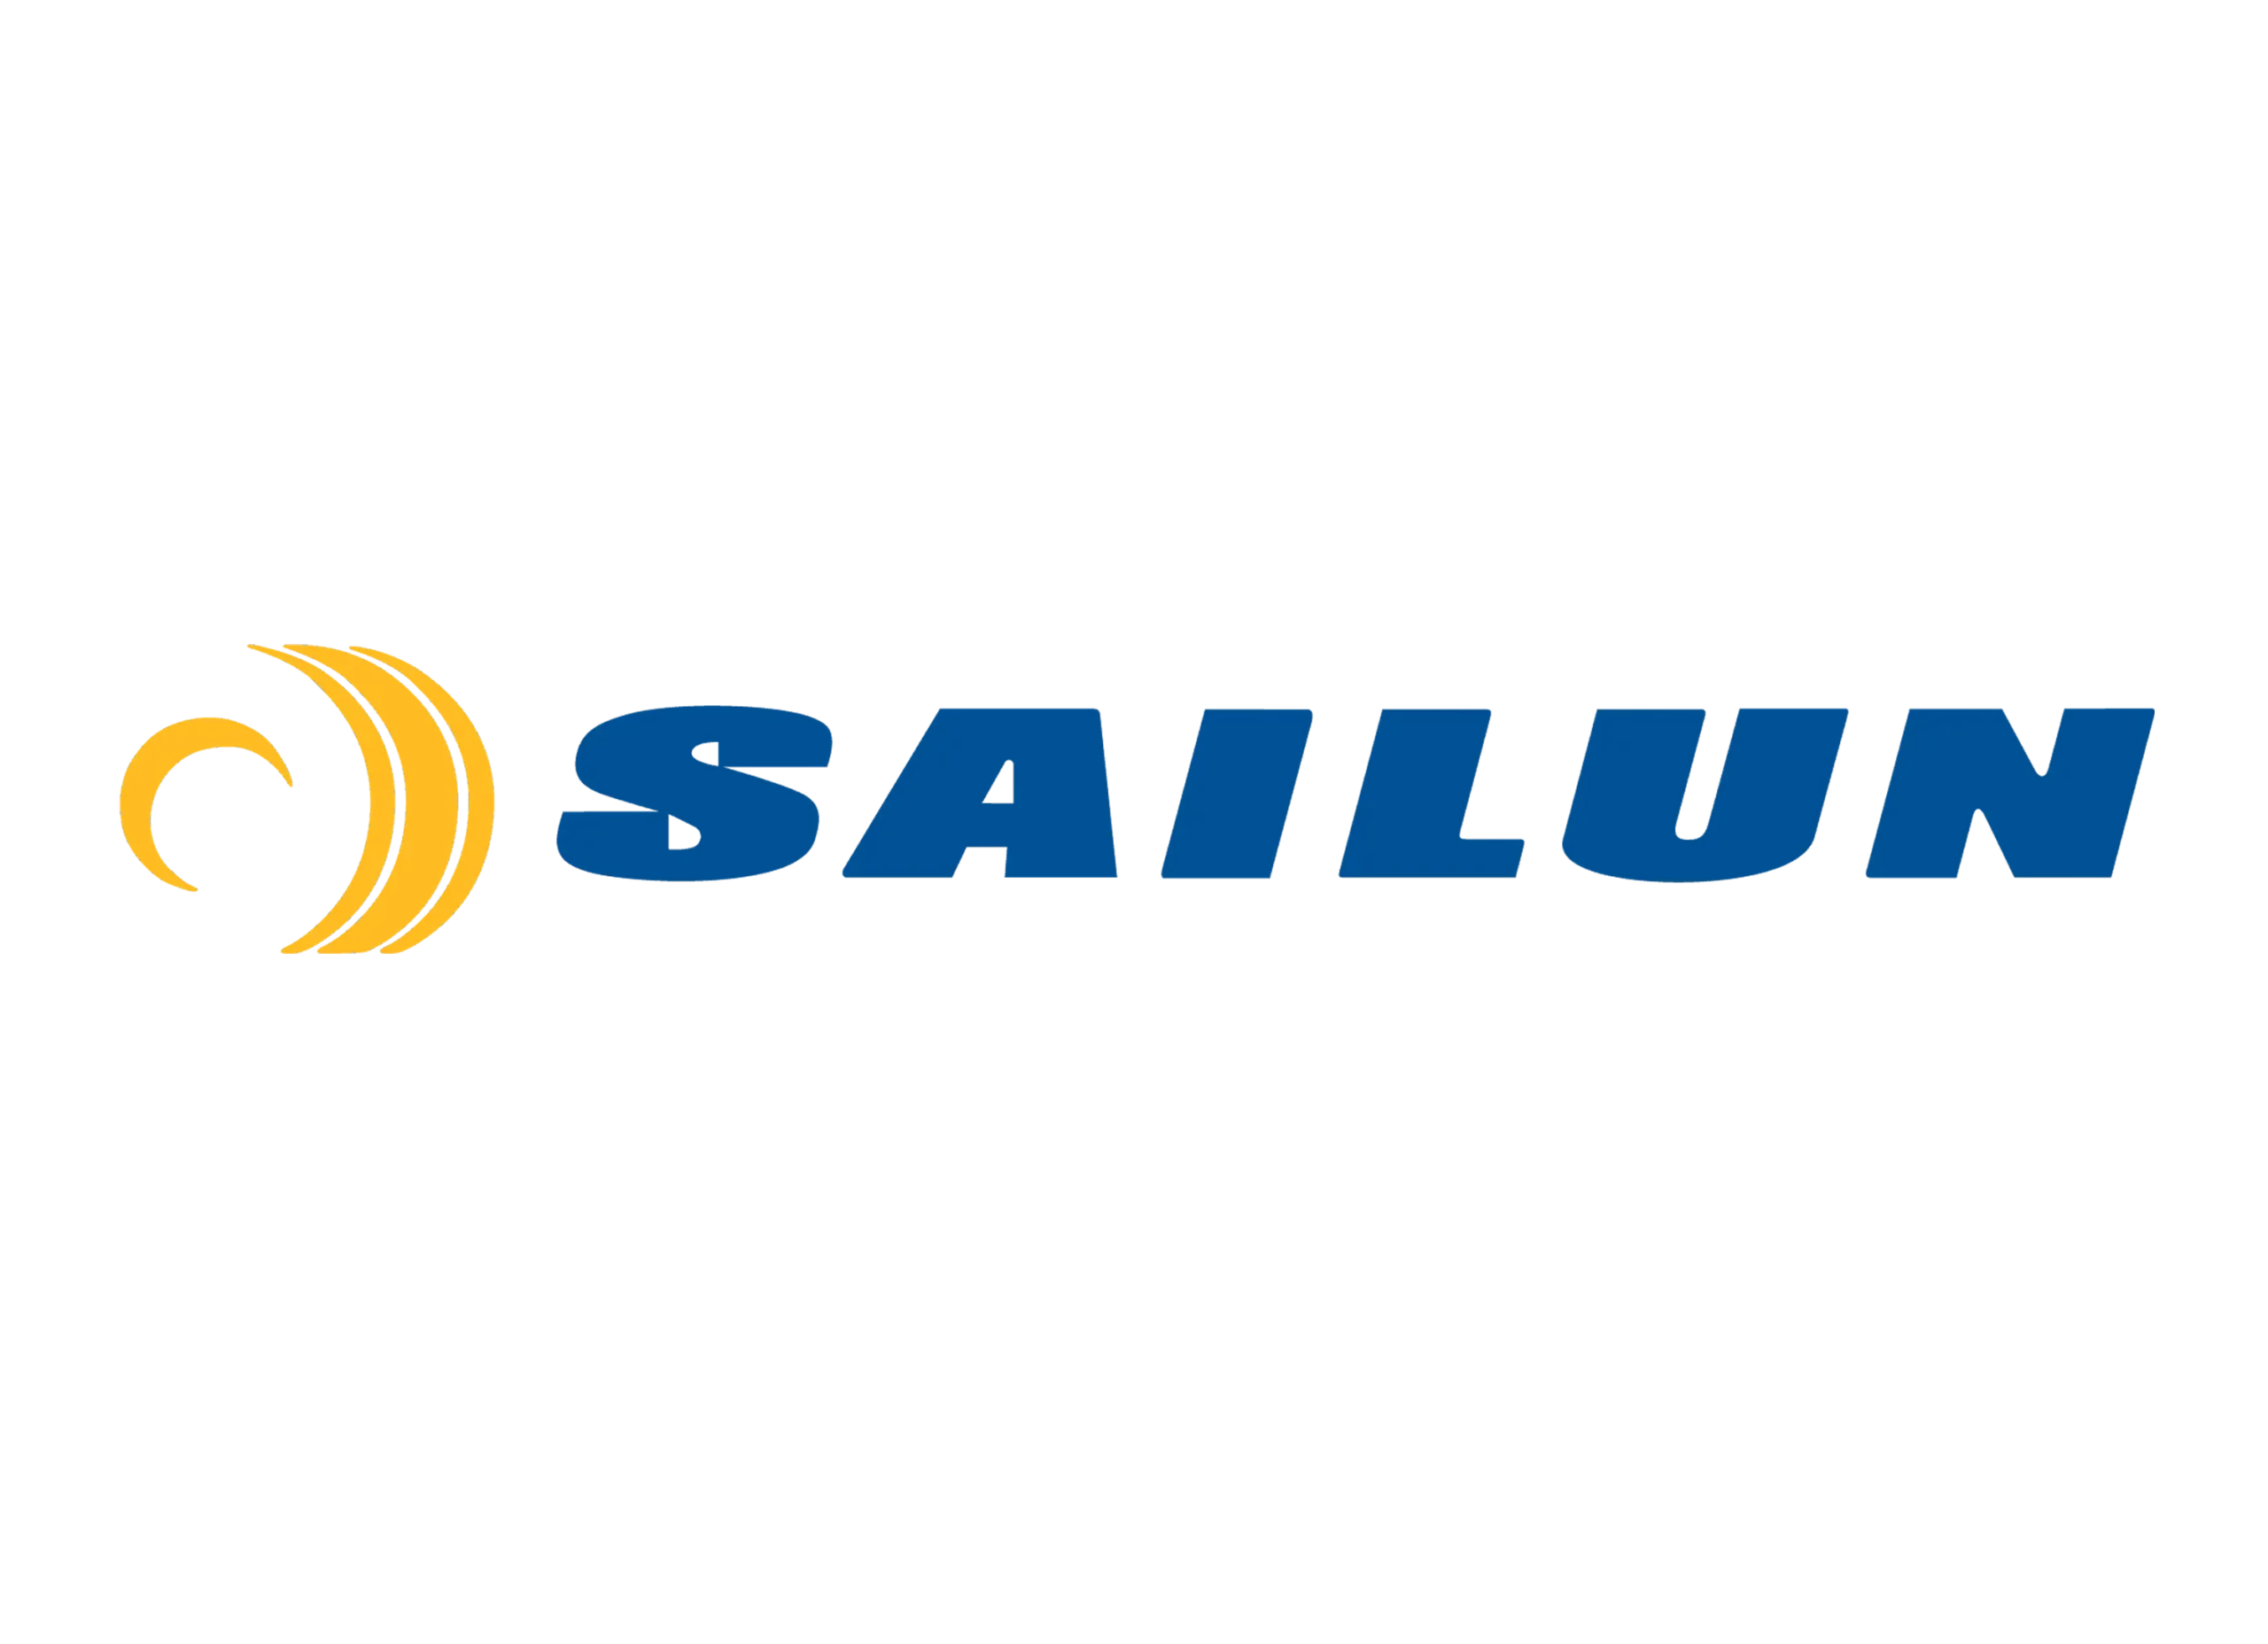 Sailun logo present